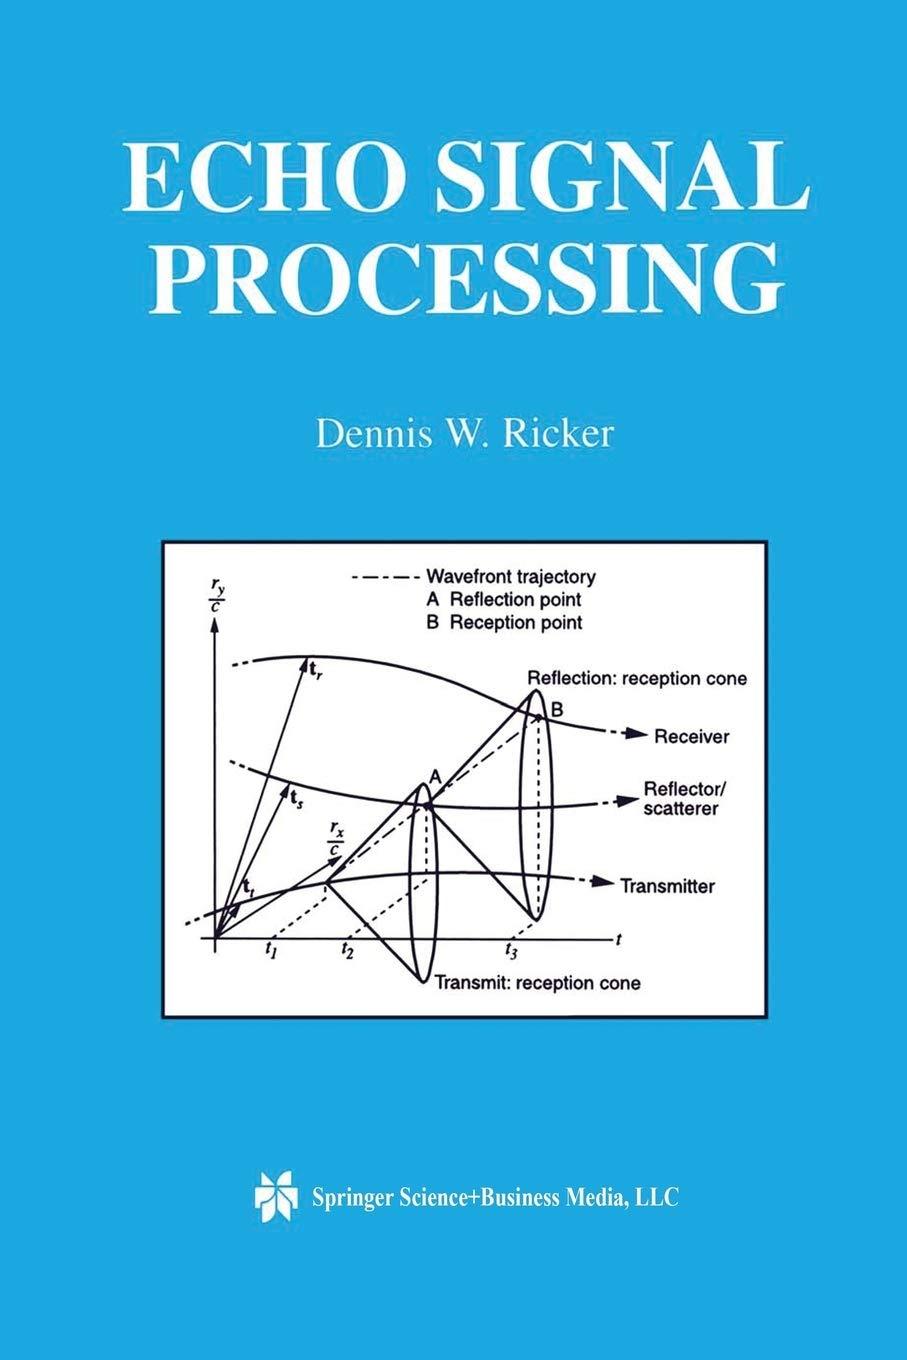 echo signal processing 2003 edition dennis w. ricker 1461350166, 978-1461350163